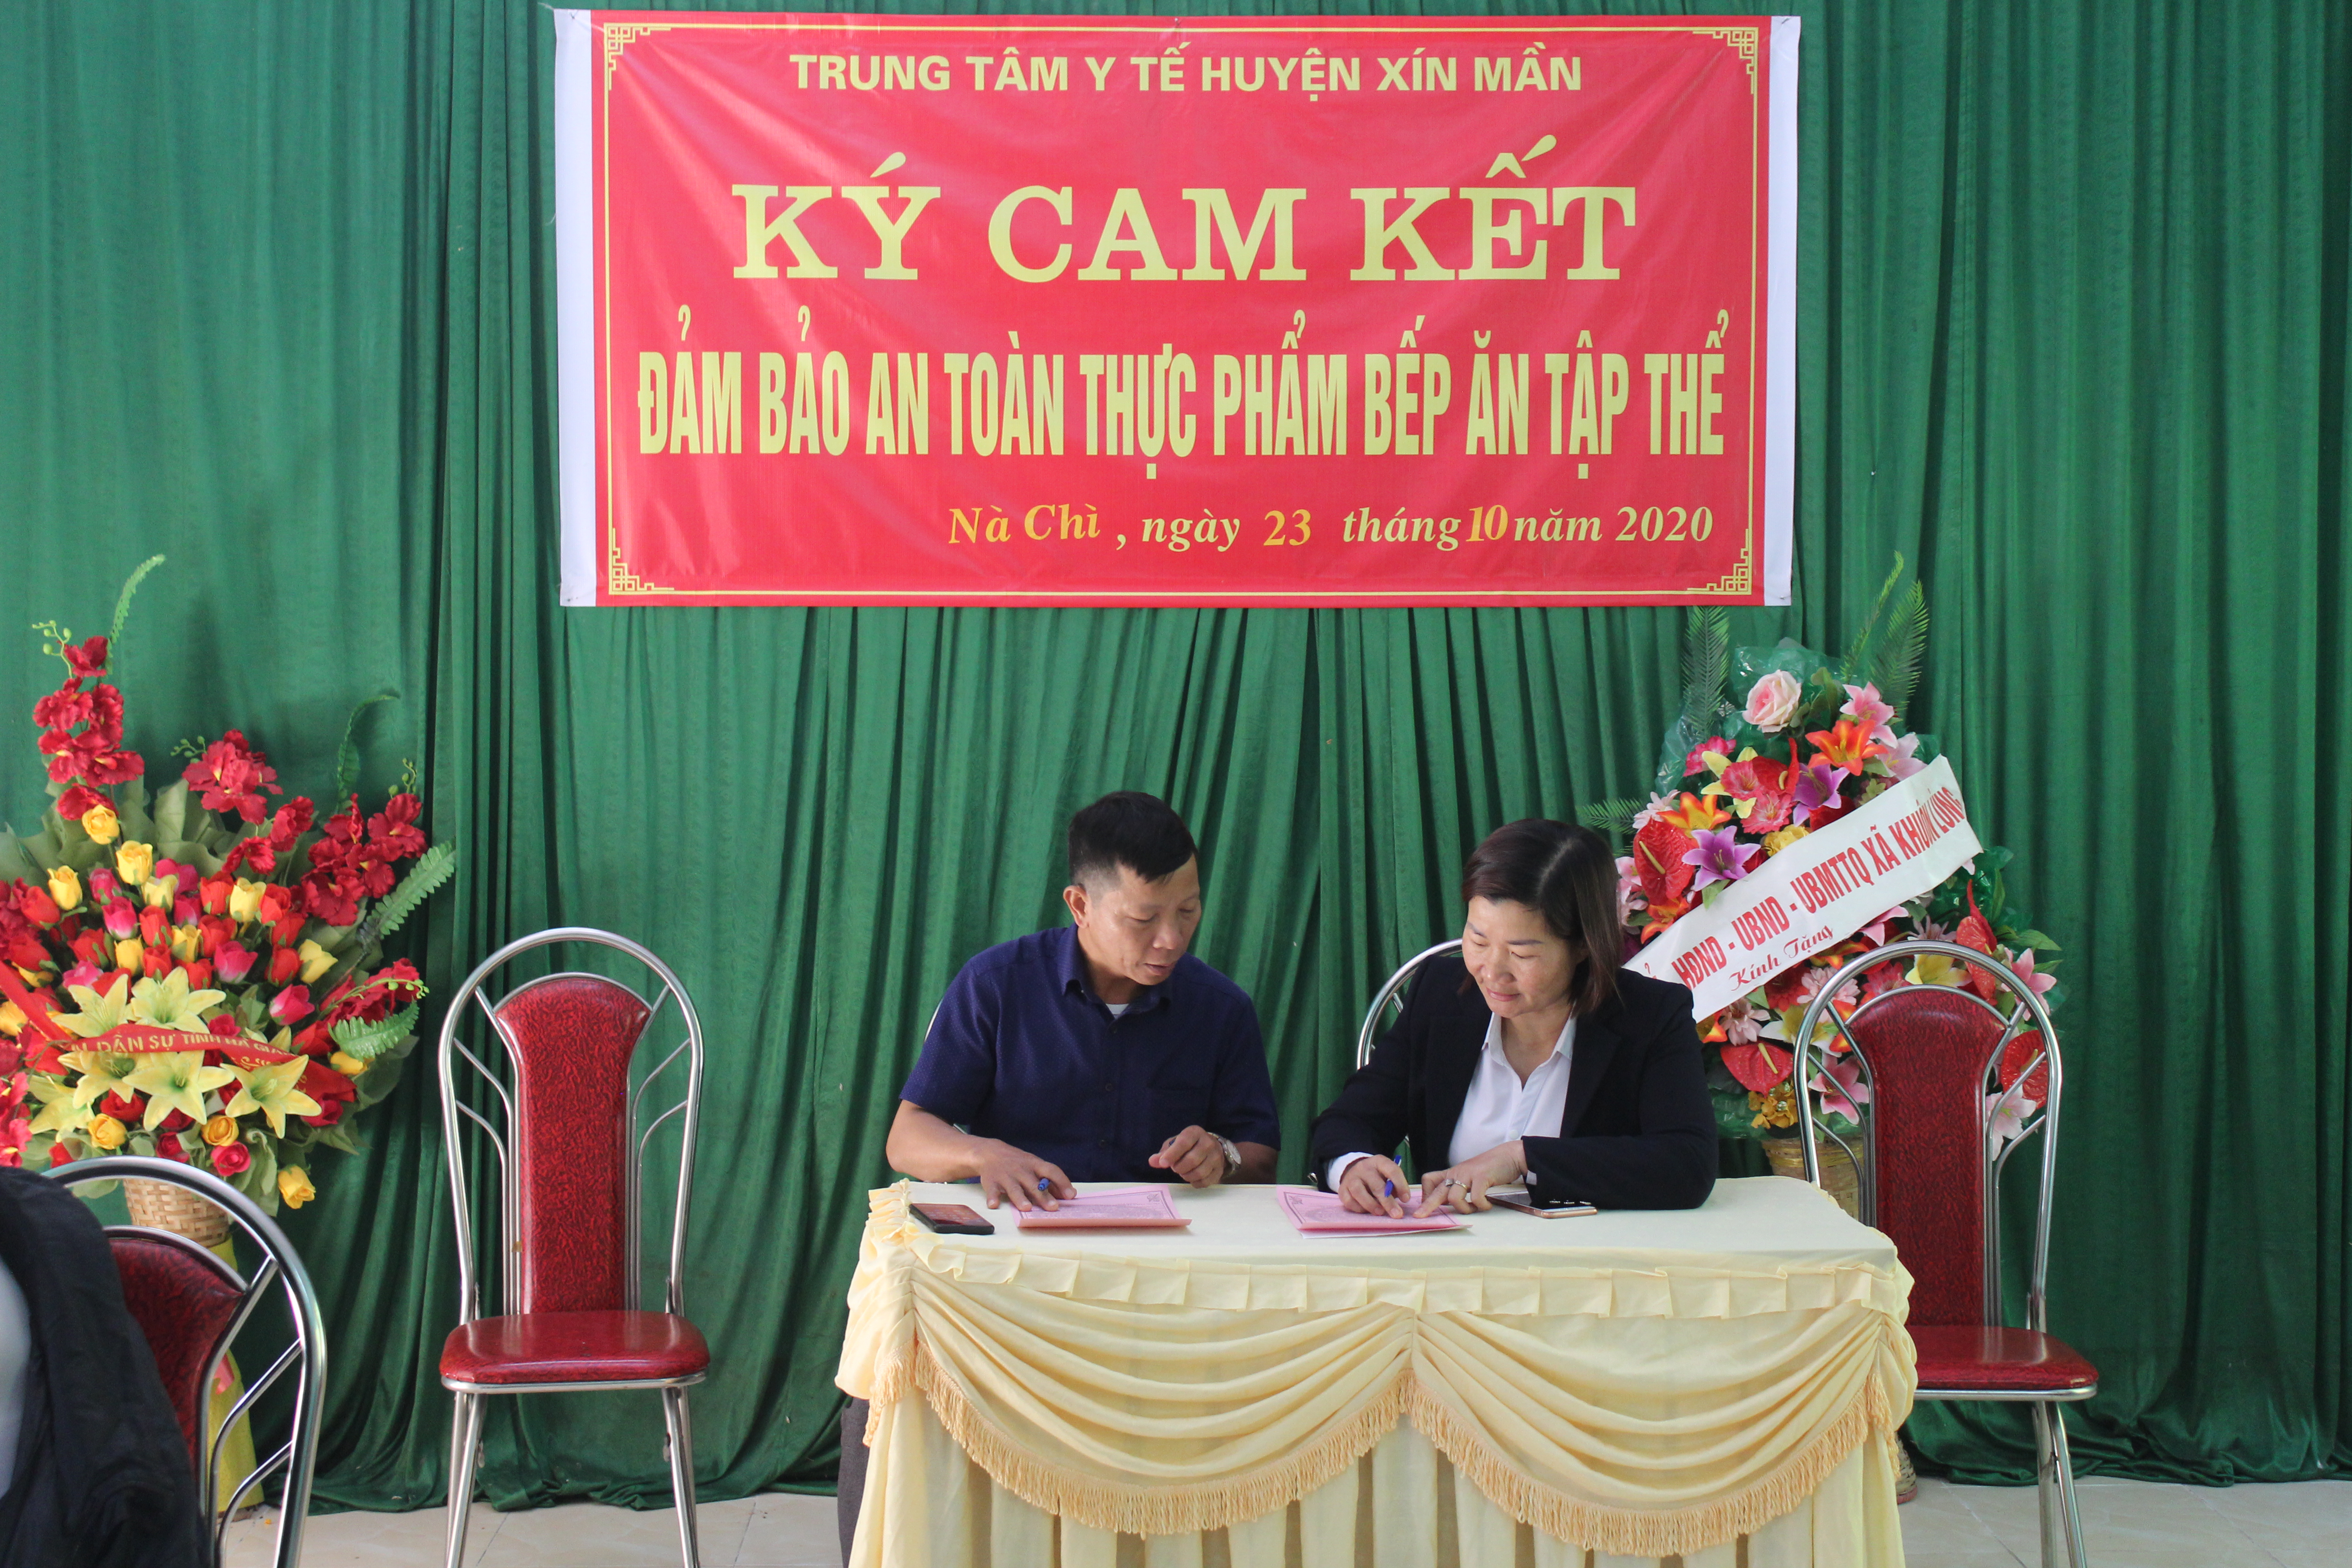 Bs Nông Xuân Trường, Phó Giám đốc TTYT huyện Xín Mần thực hiện ký cam kết với Đ/c Bùi Hồng Biên, Phó Hiệu trưởng trường Tiểu học xã Nà Chì